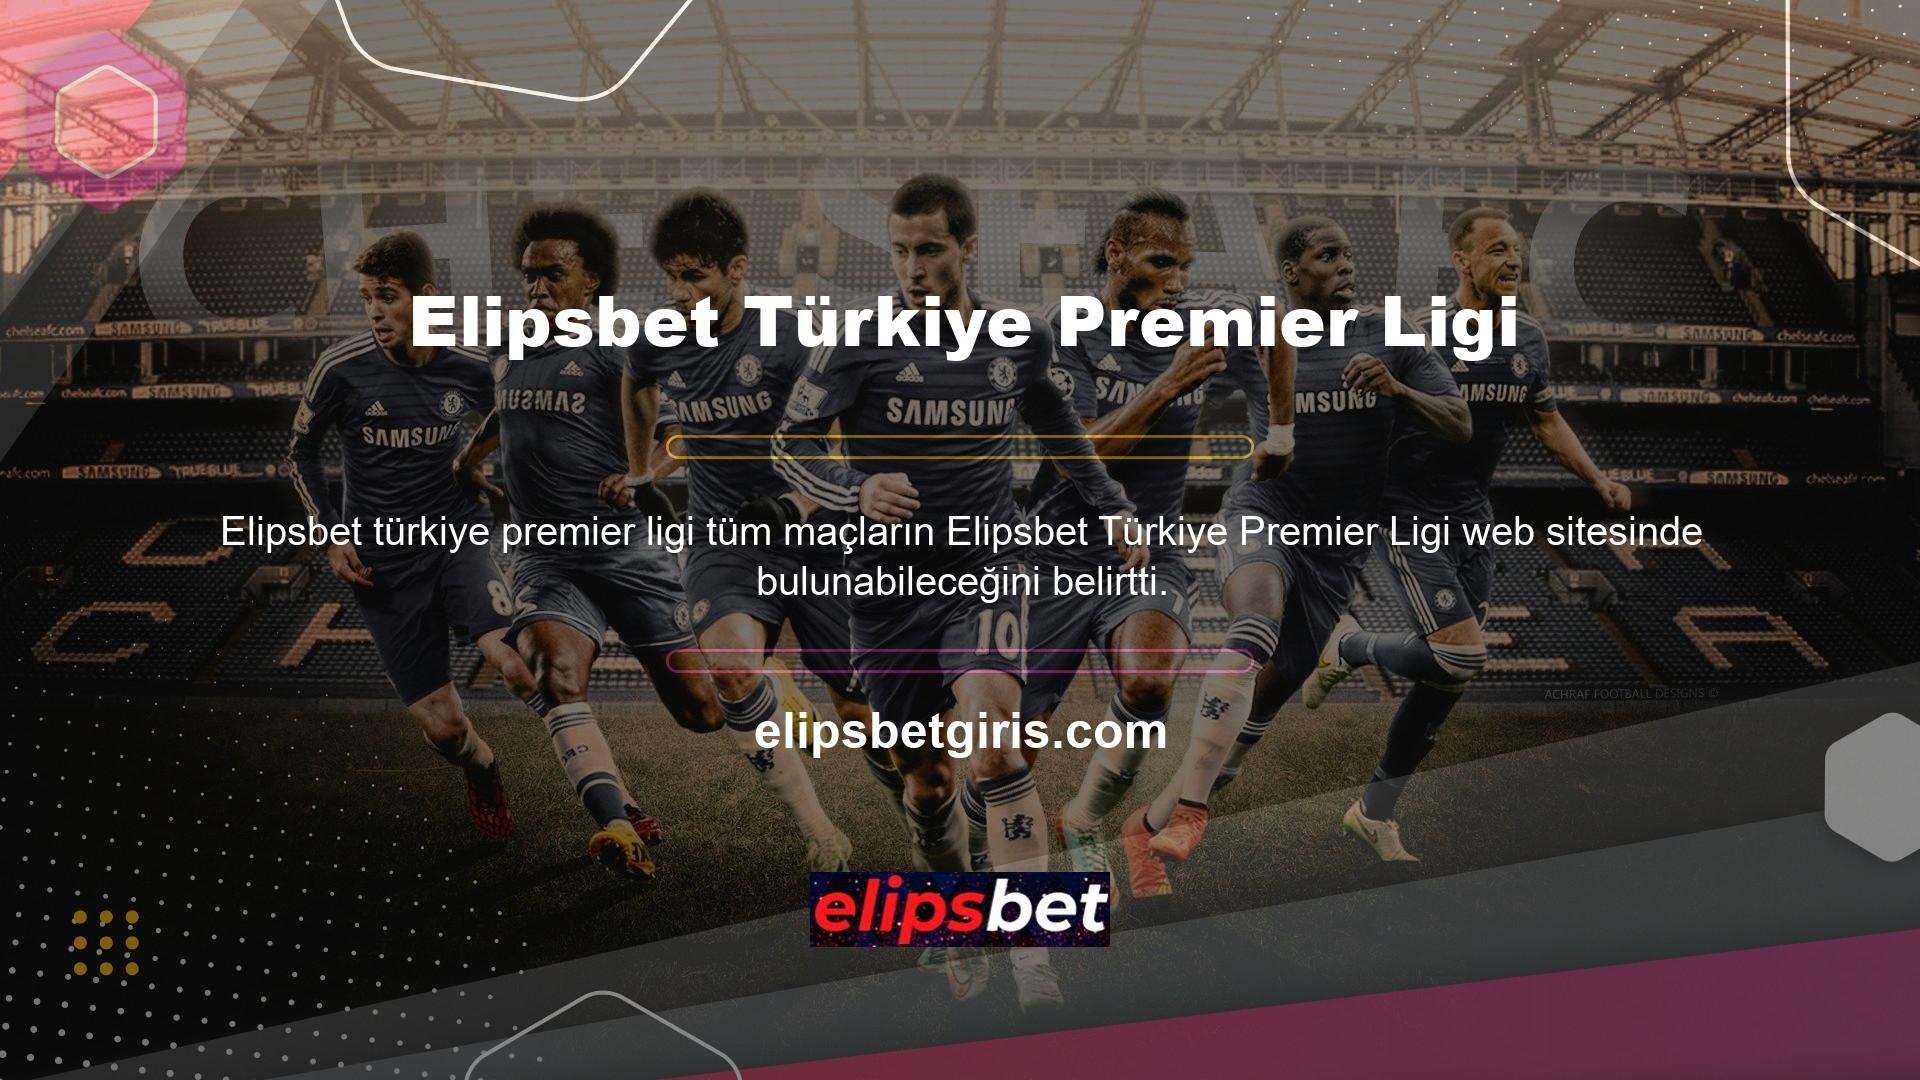 Bu maçların öncelikli amacı Türkiye Süper Liginde mücadele etmektir